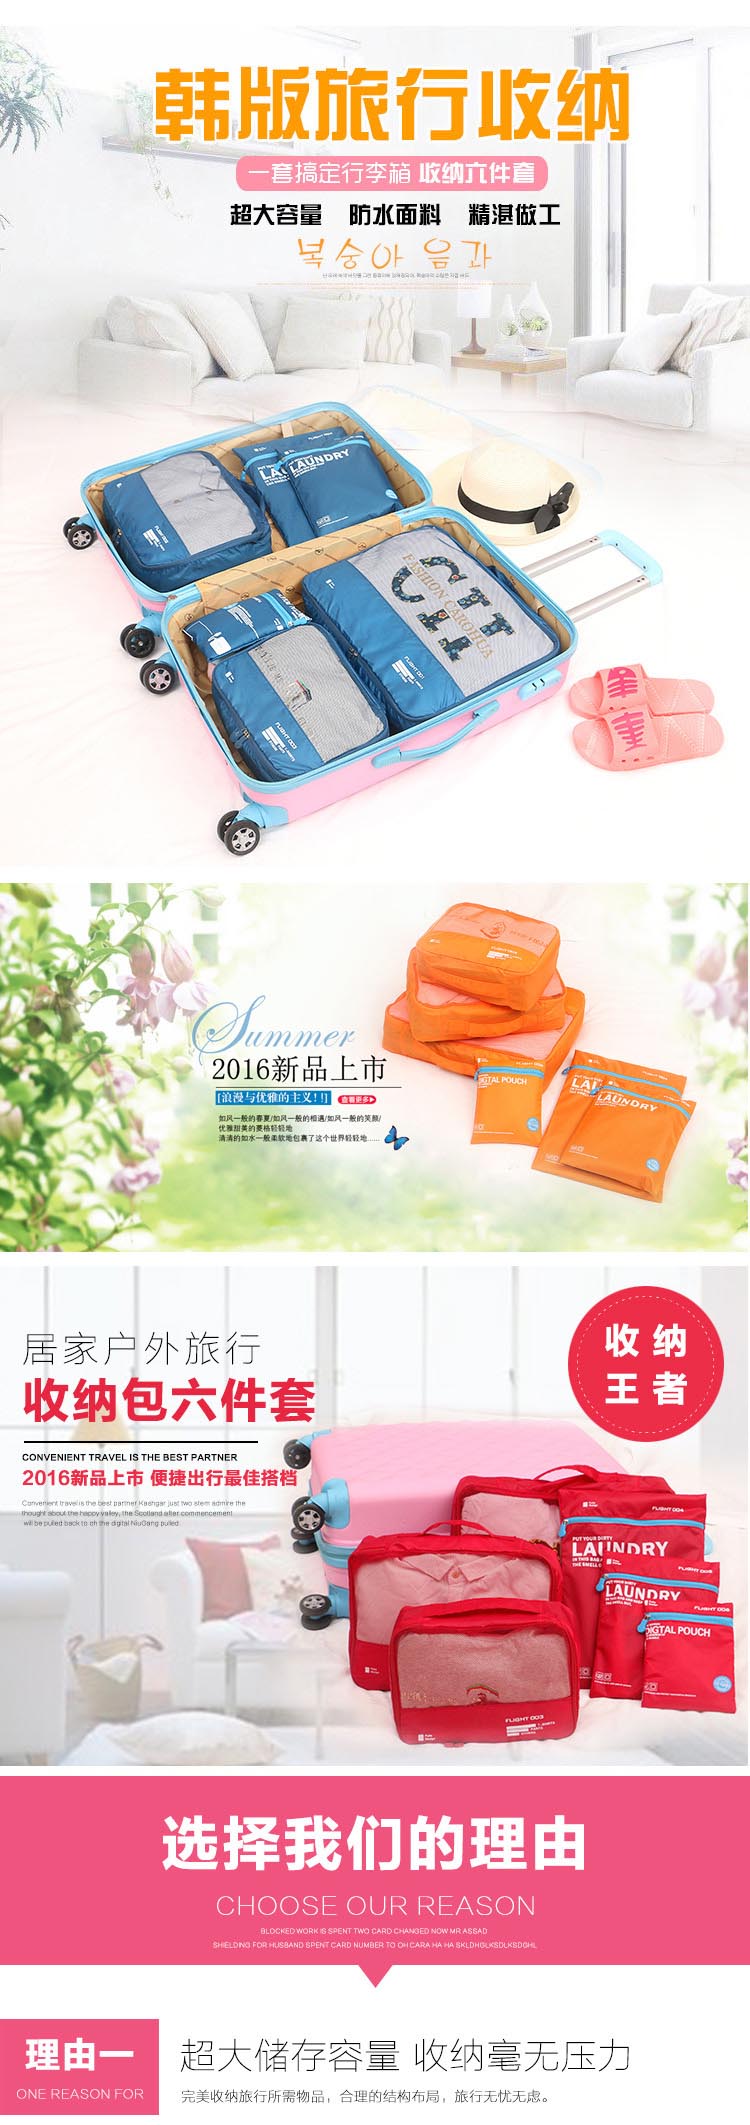 韩国新款旅行收纳袋行李箱整理袋衣物衣服内衣旅行六件套1